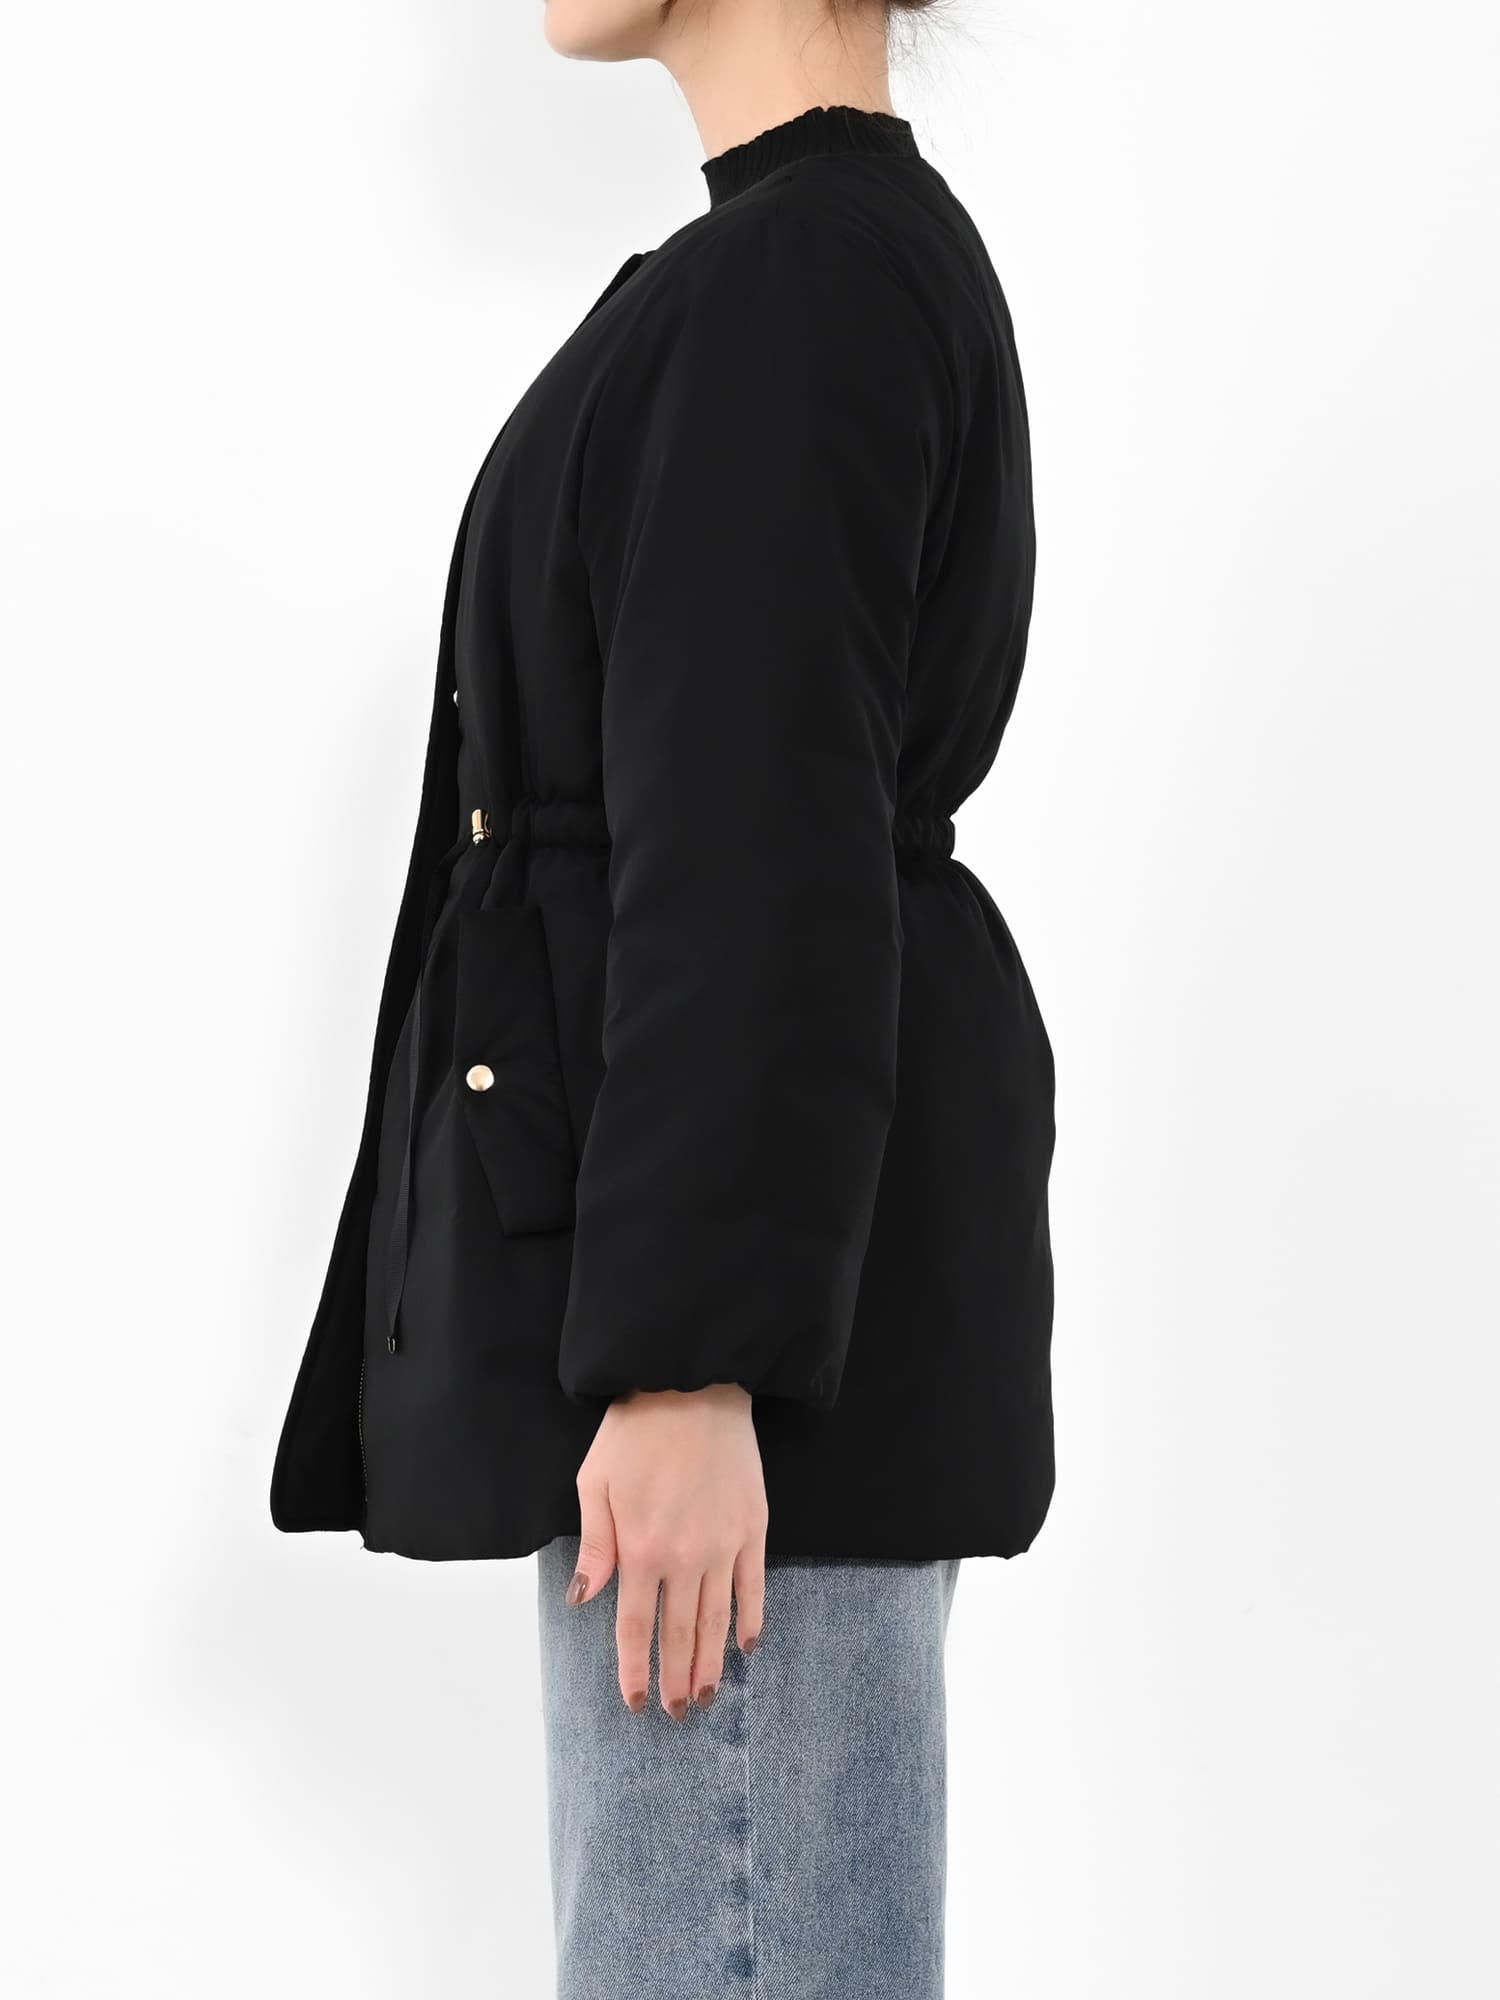 ドロストミドルダウンジャケット | 小柄・低身長女性向けファッション ...